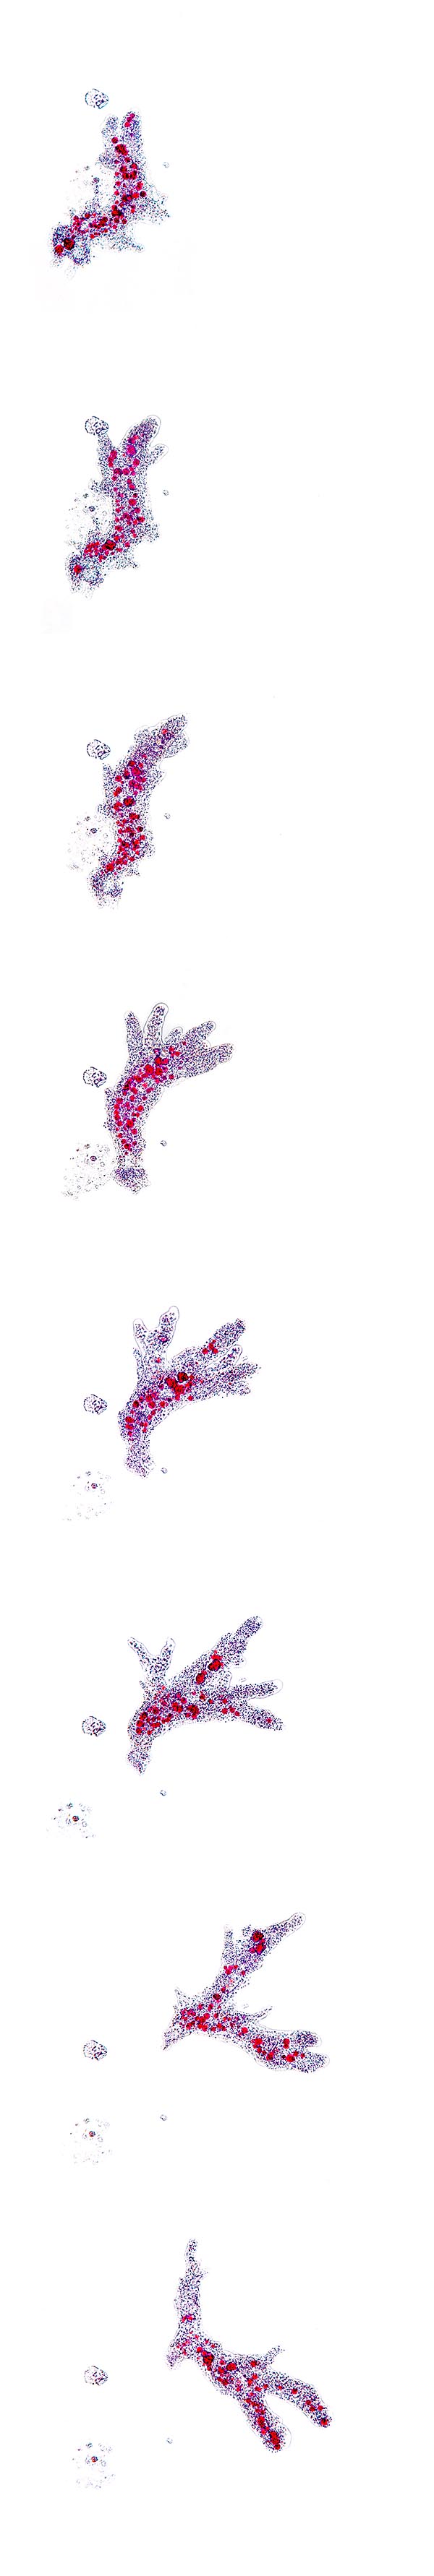 Movement sequence of an Amoeba proteus © Giuseppe Mazza